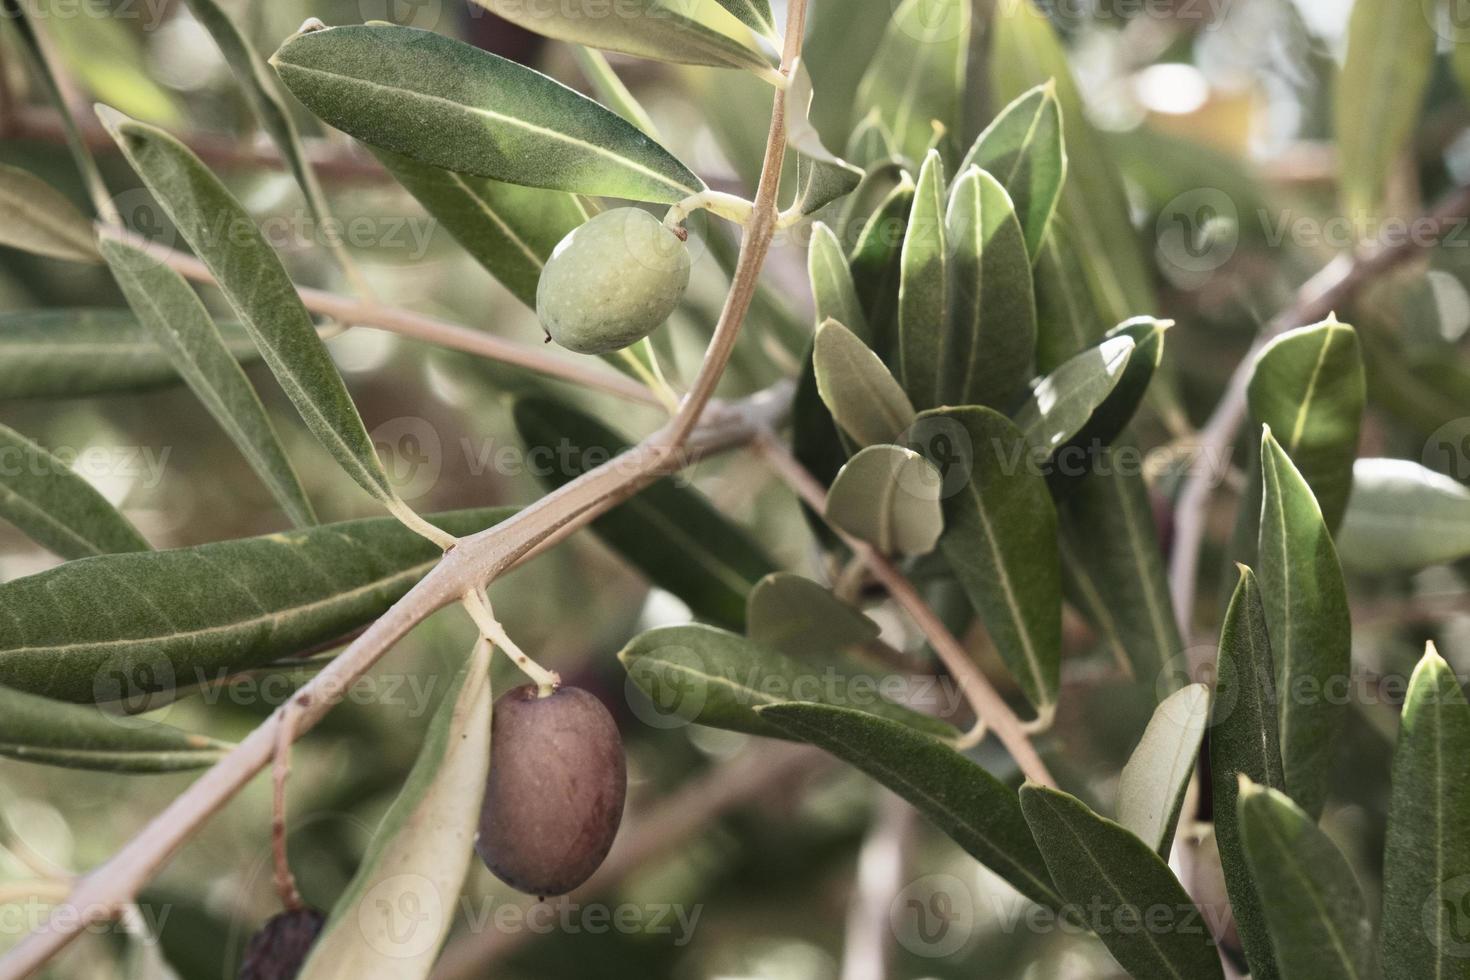 azeite verde no ramo closeup, planta de azeitonas frescas, folha de oliveira madura, folhagem da árvore perene com frutas ao ar livre, fundo da natureza. foto